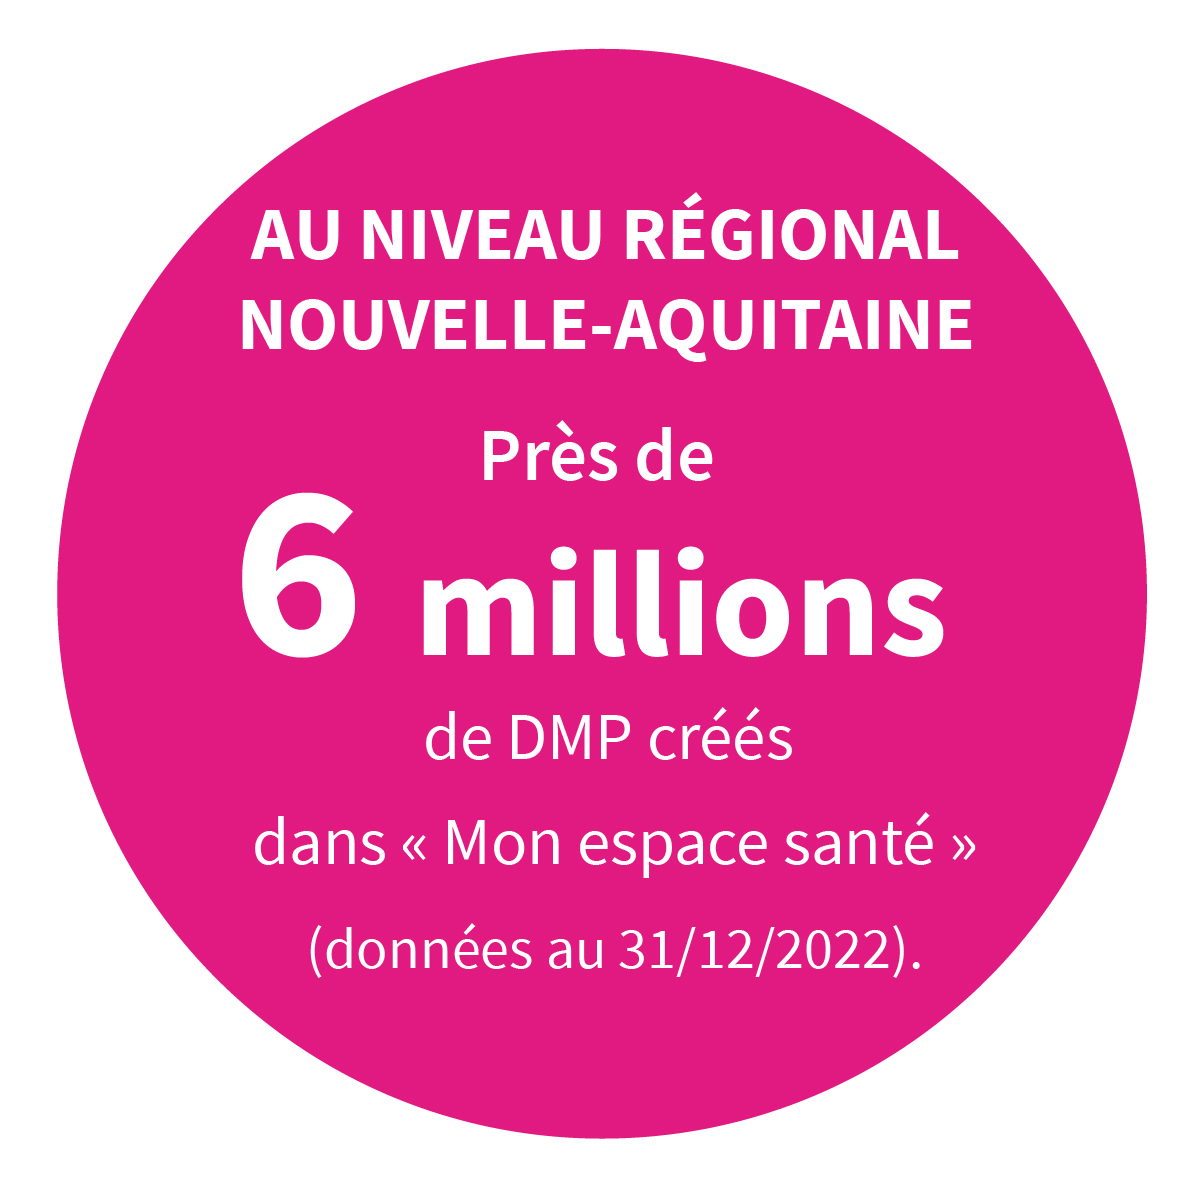 AU NIVEAU REGIONAL NOUVELLE-AQUITAINE Près de 6 millions de DMP créés dans « Mon espace santé » (données au 31/12/2022).